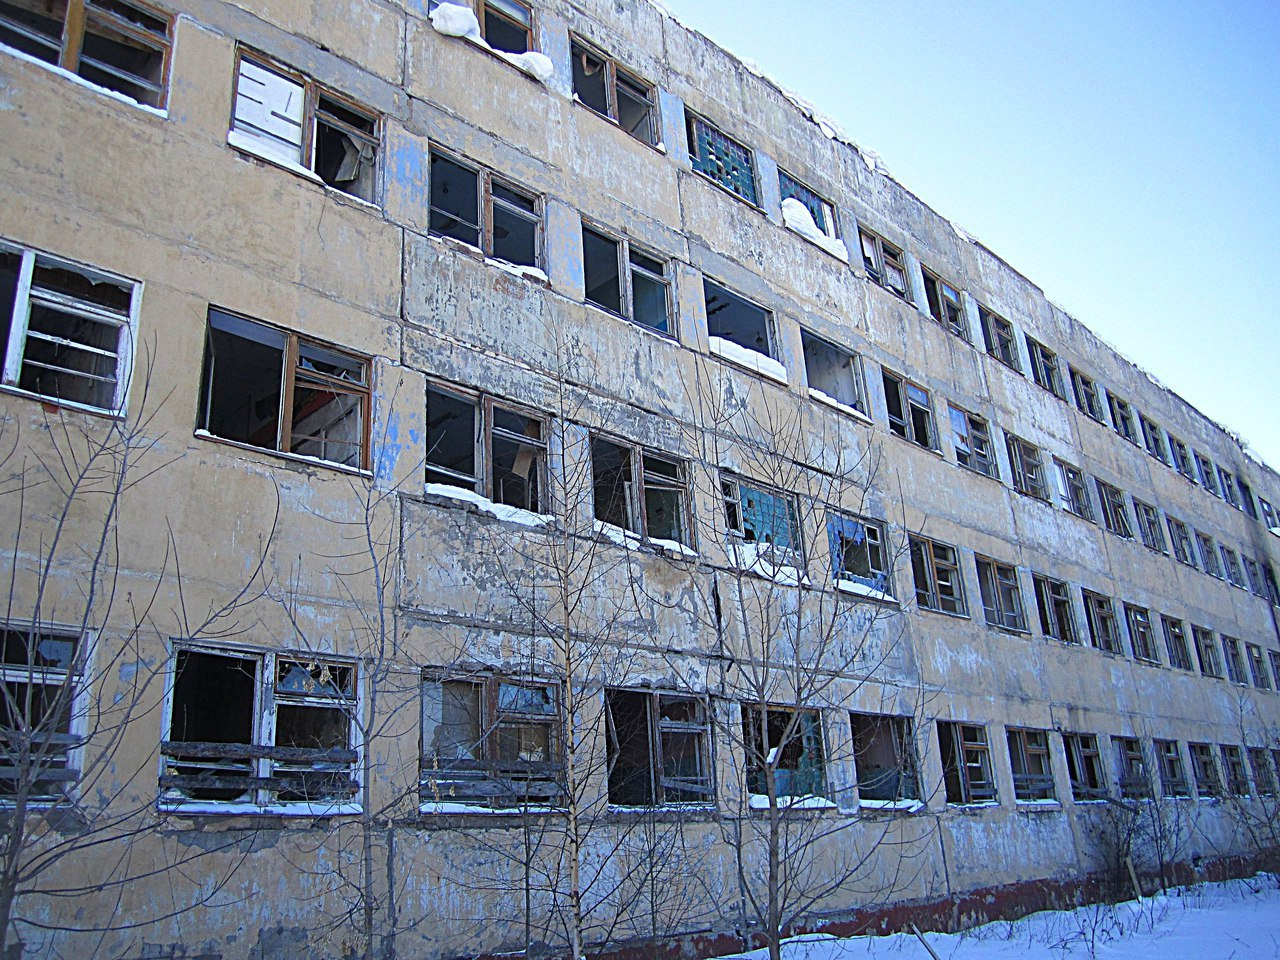 Здания бывшего КВАТУ в Кирове снесут за 1 млн рублей